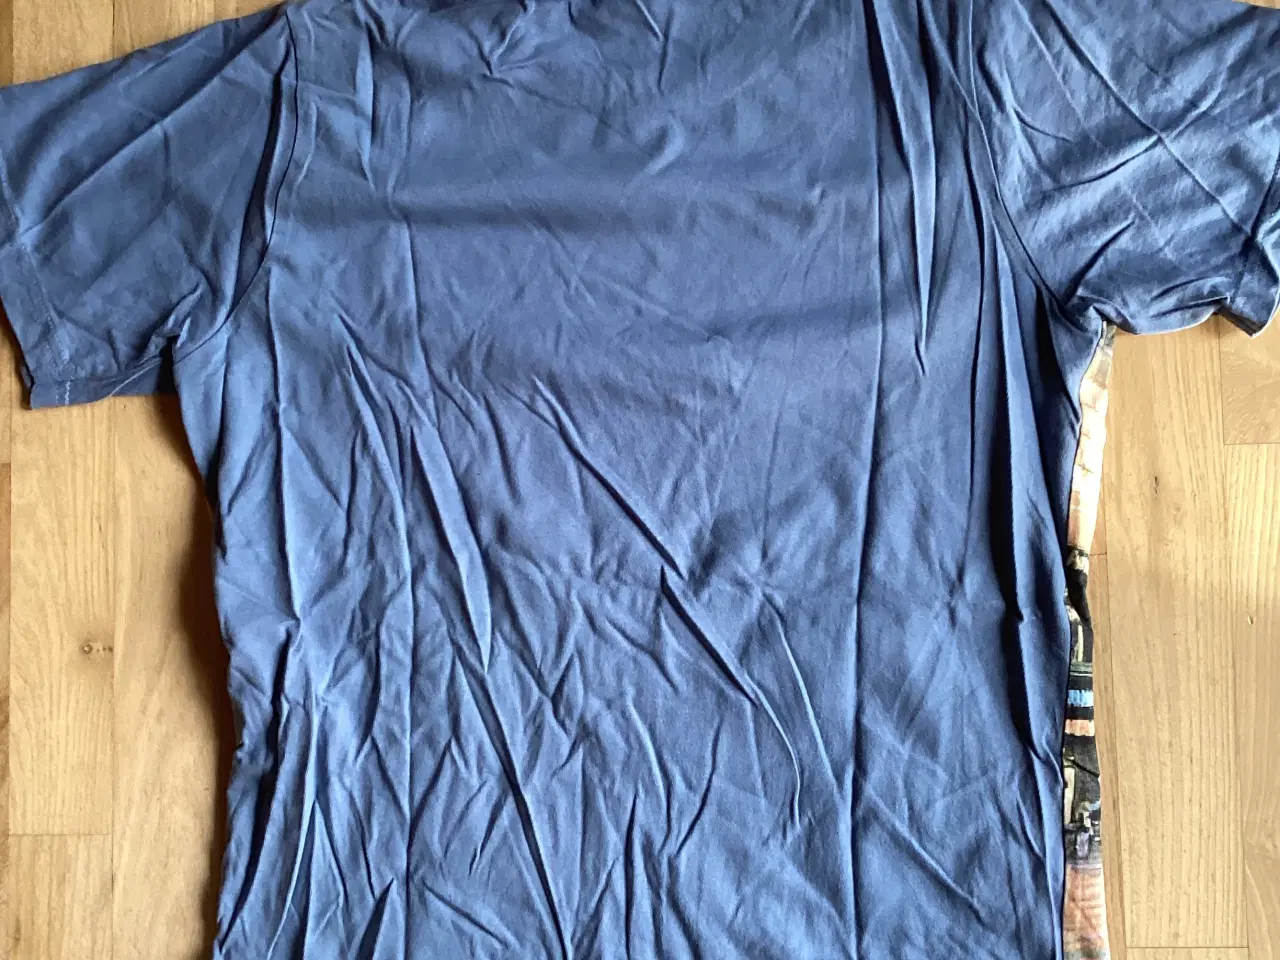 Billede 2 - Støvblå t-shirt med print foran.